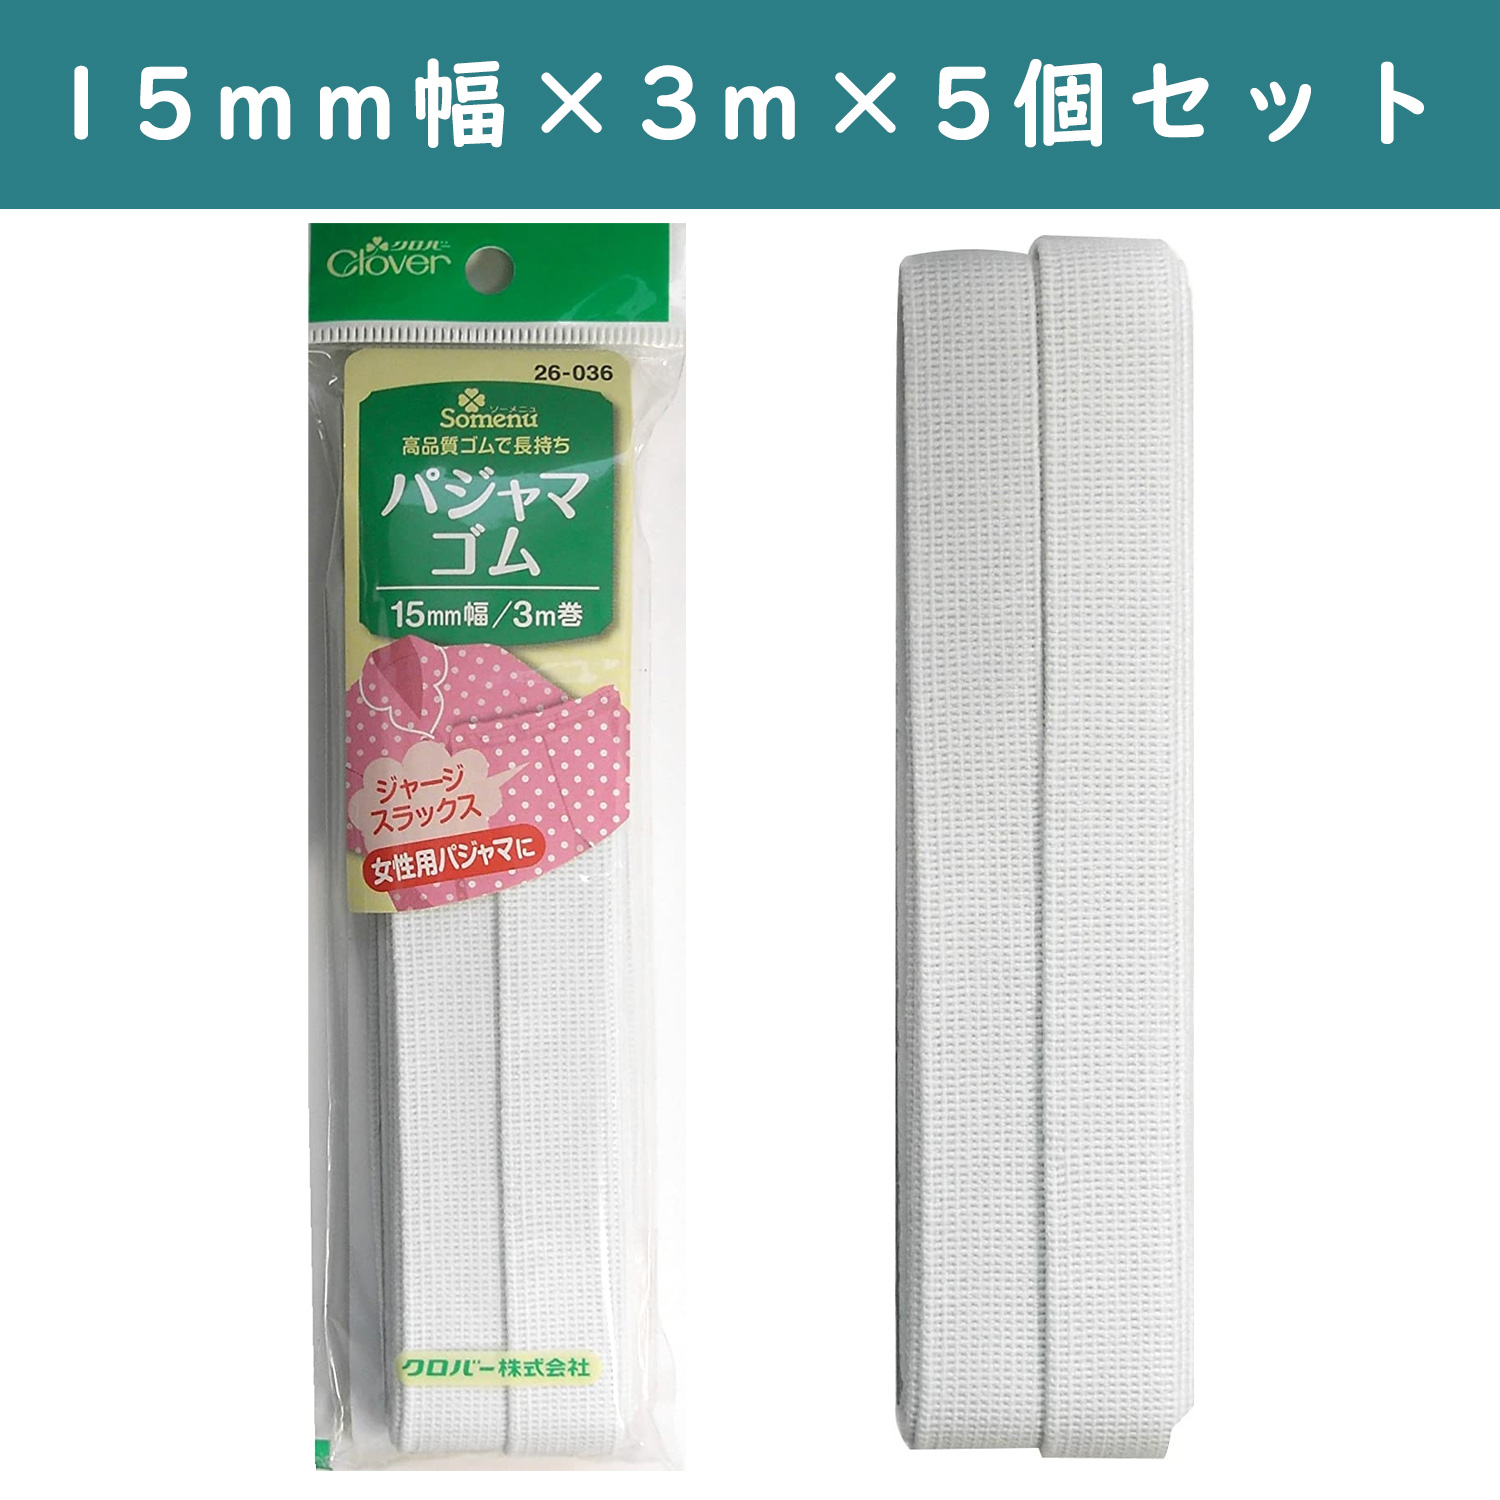 ■【5個】CL26-036-5set パジャマゴム 15mm幅 3m巻 白 ×5個 (セット)